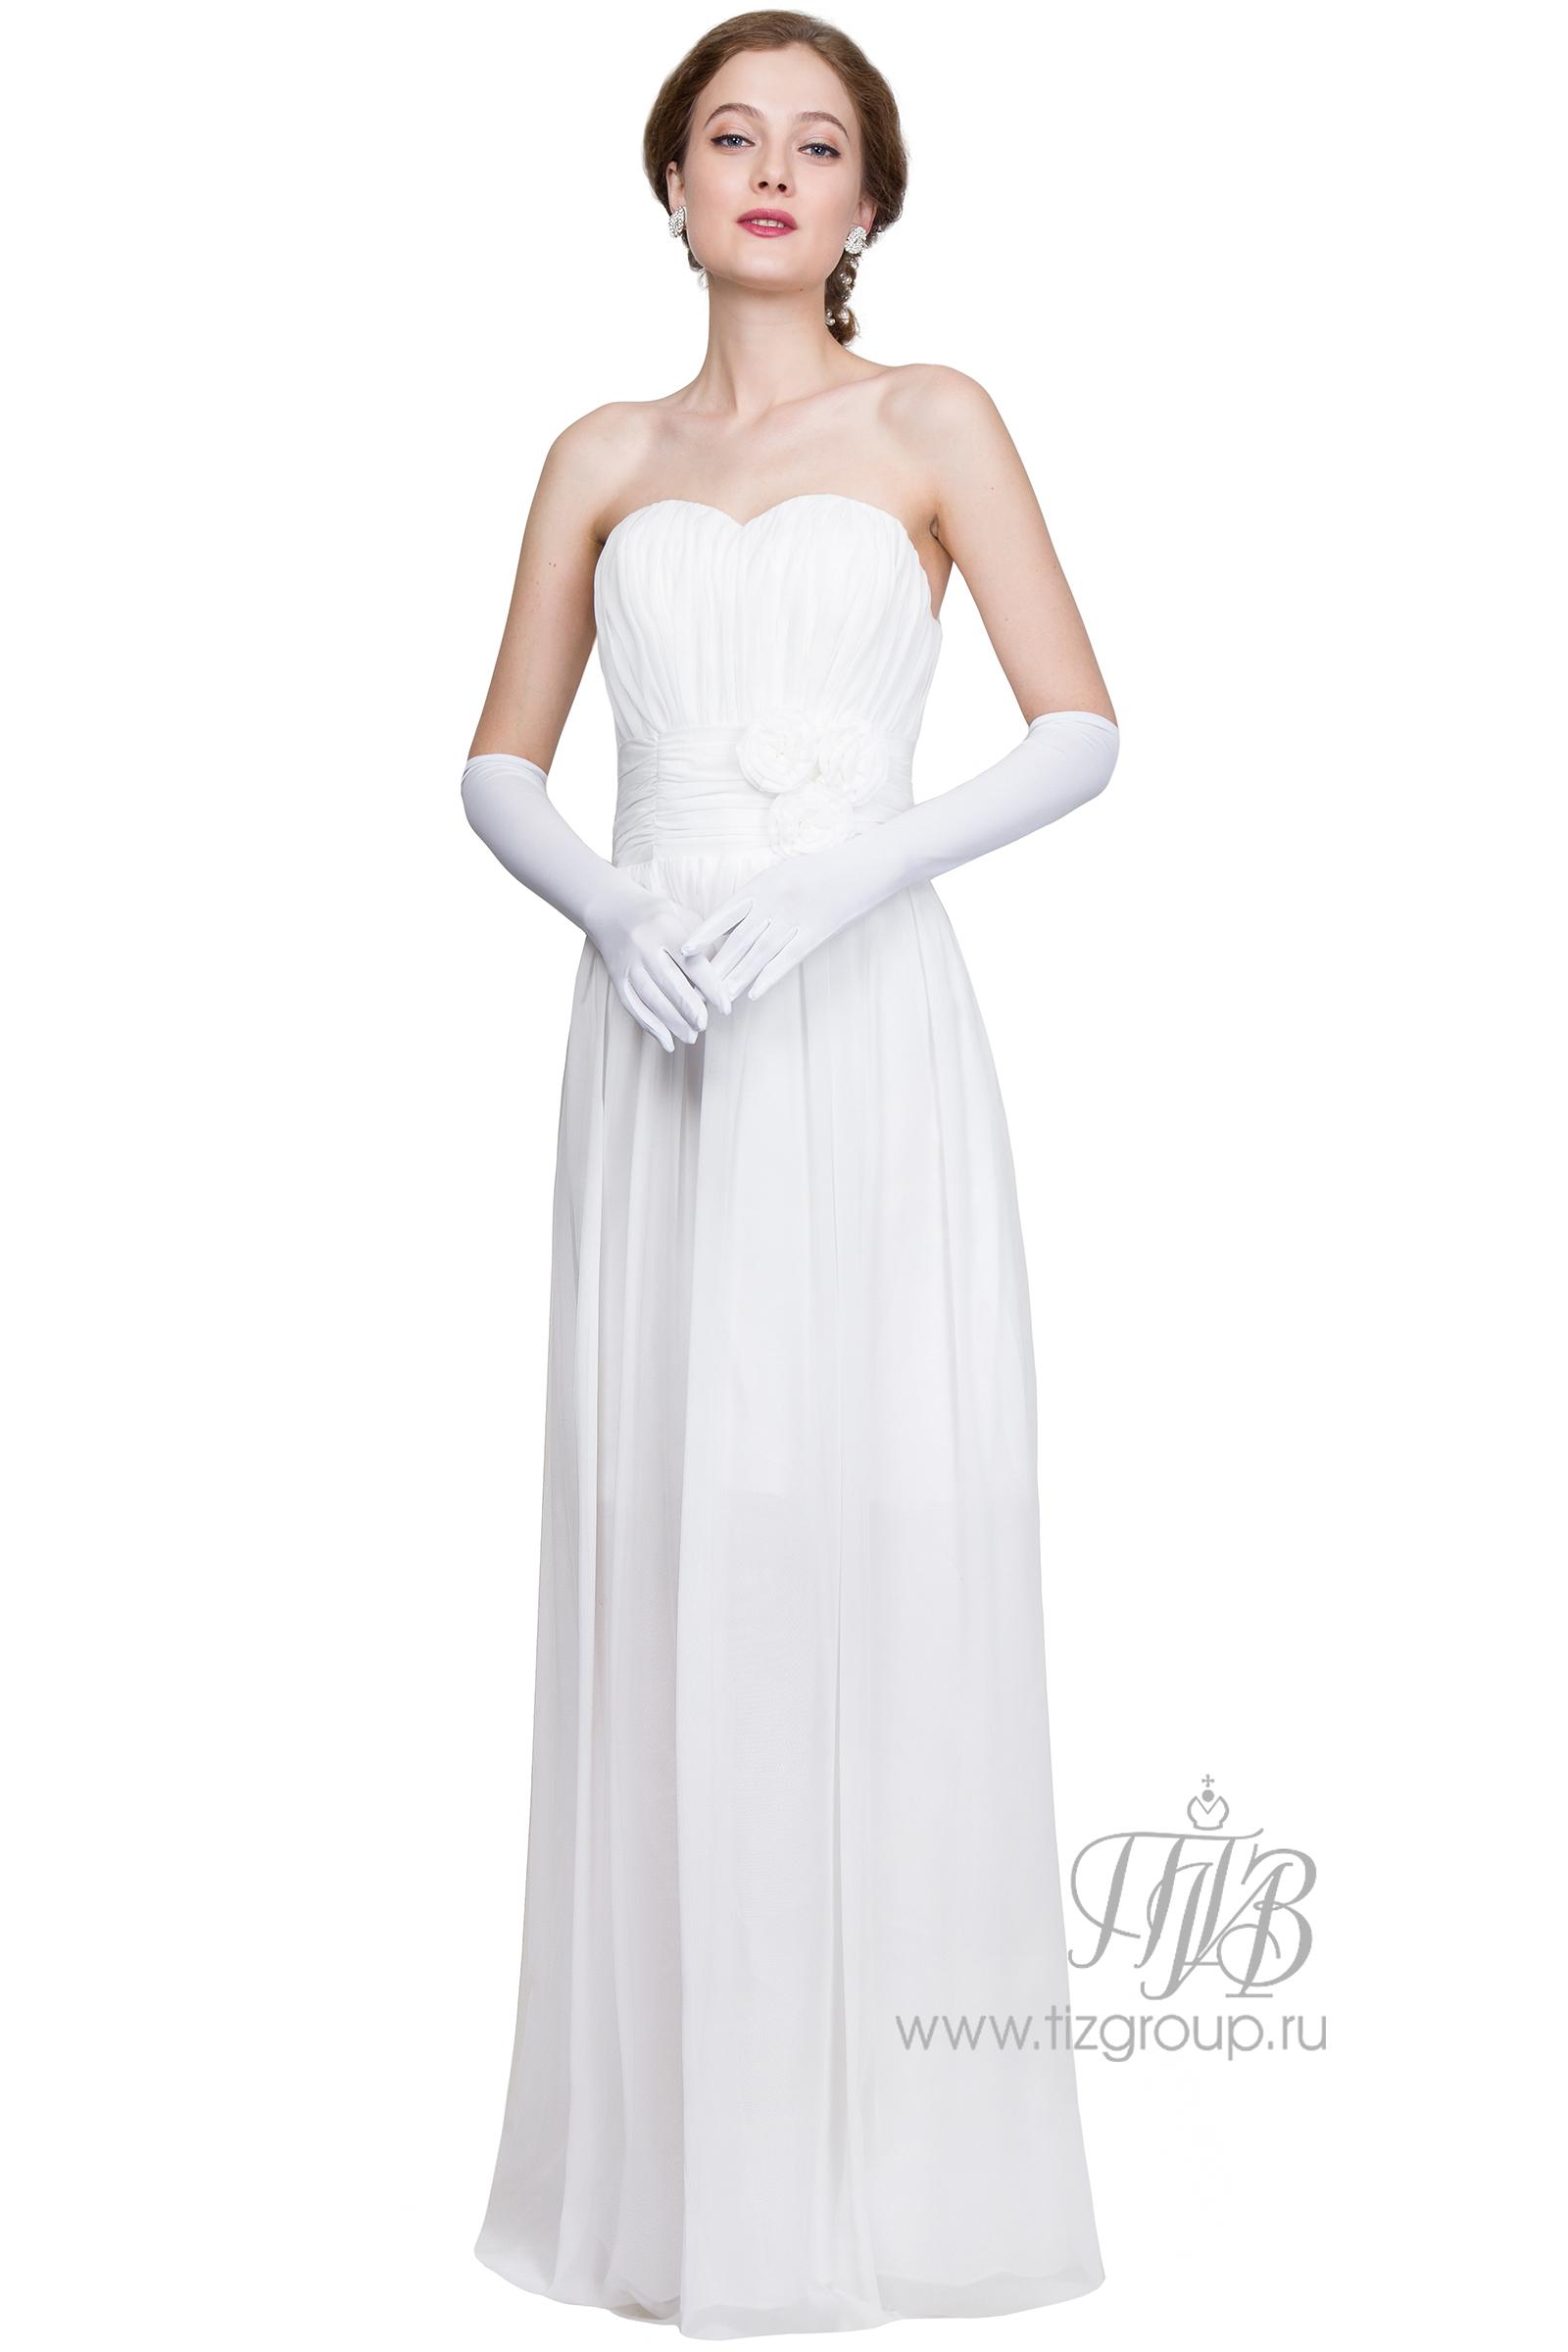 Белое платье для бала. Балу каталог